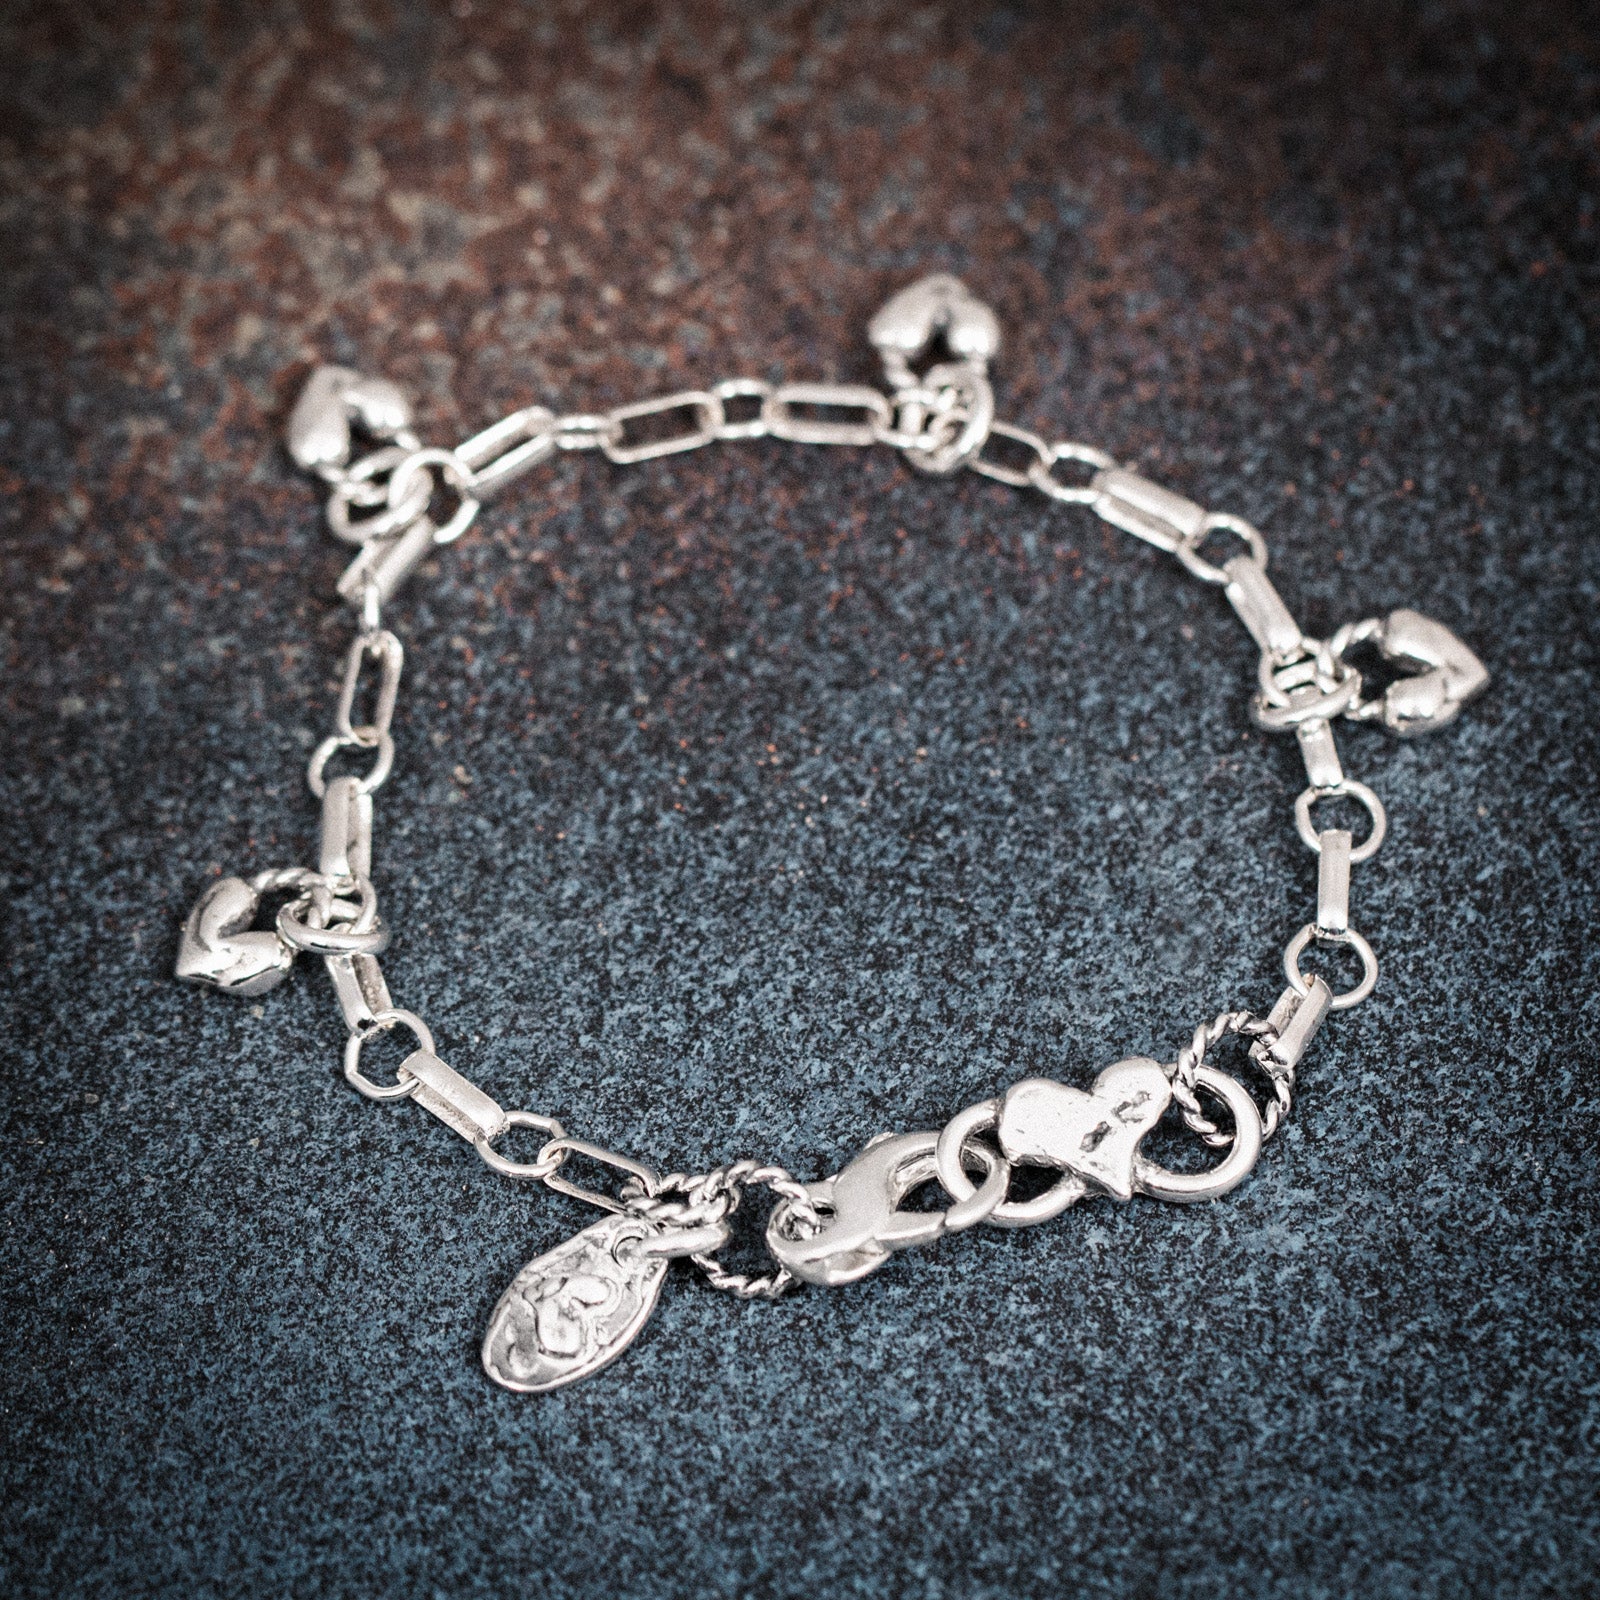 silver heart charm bracelet